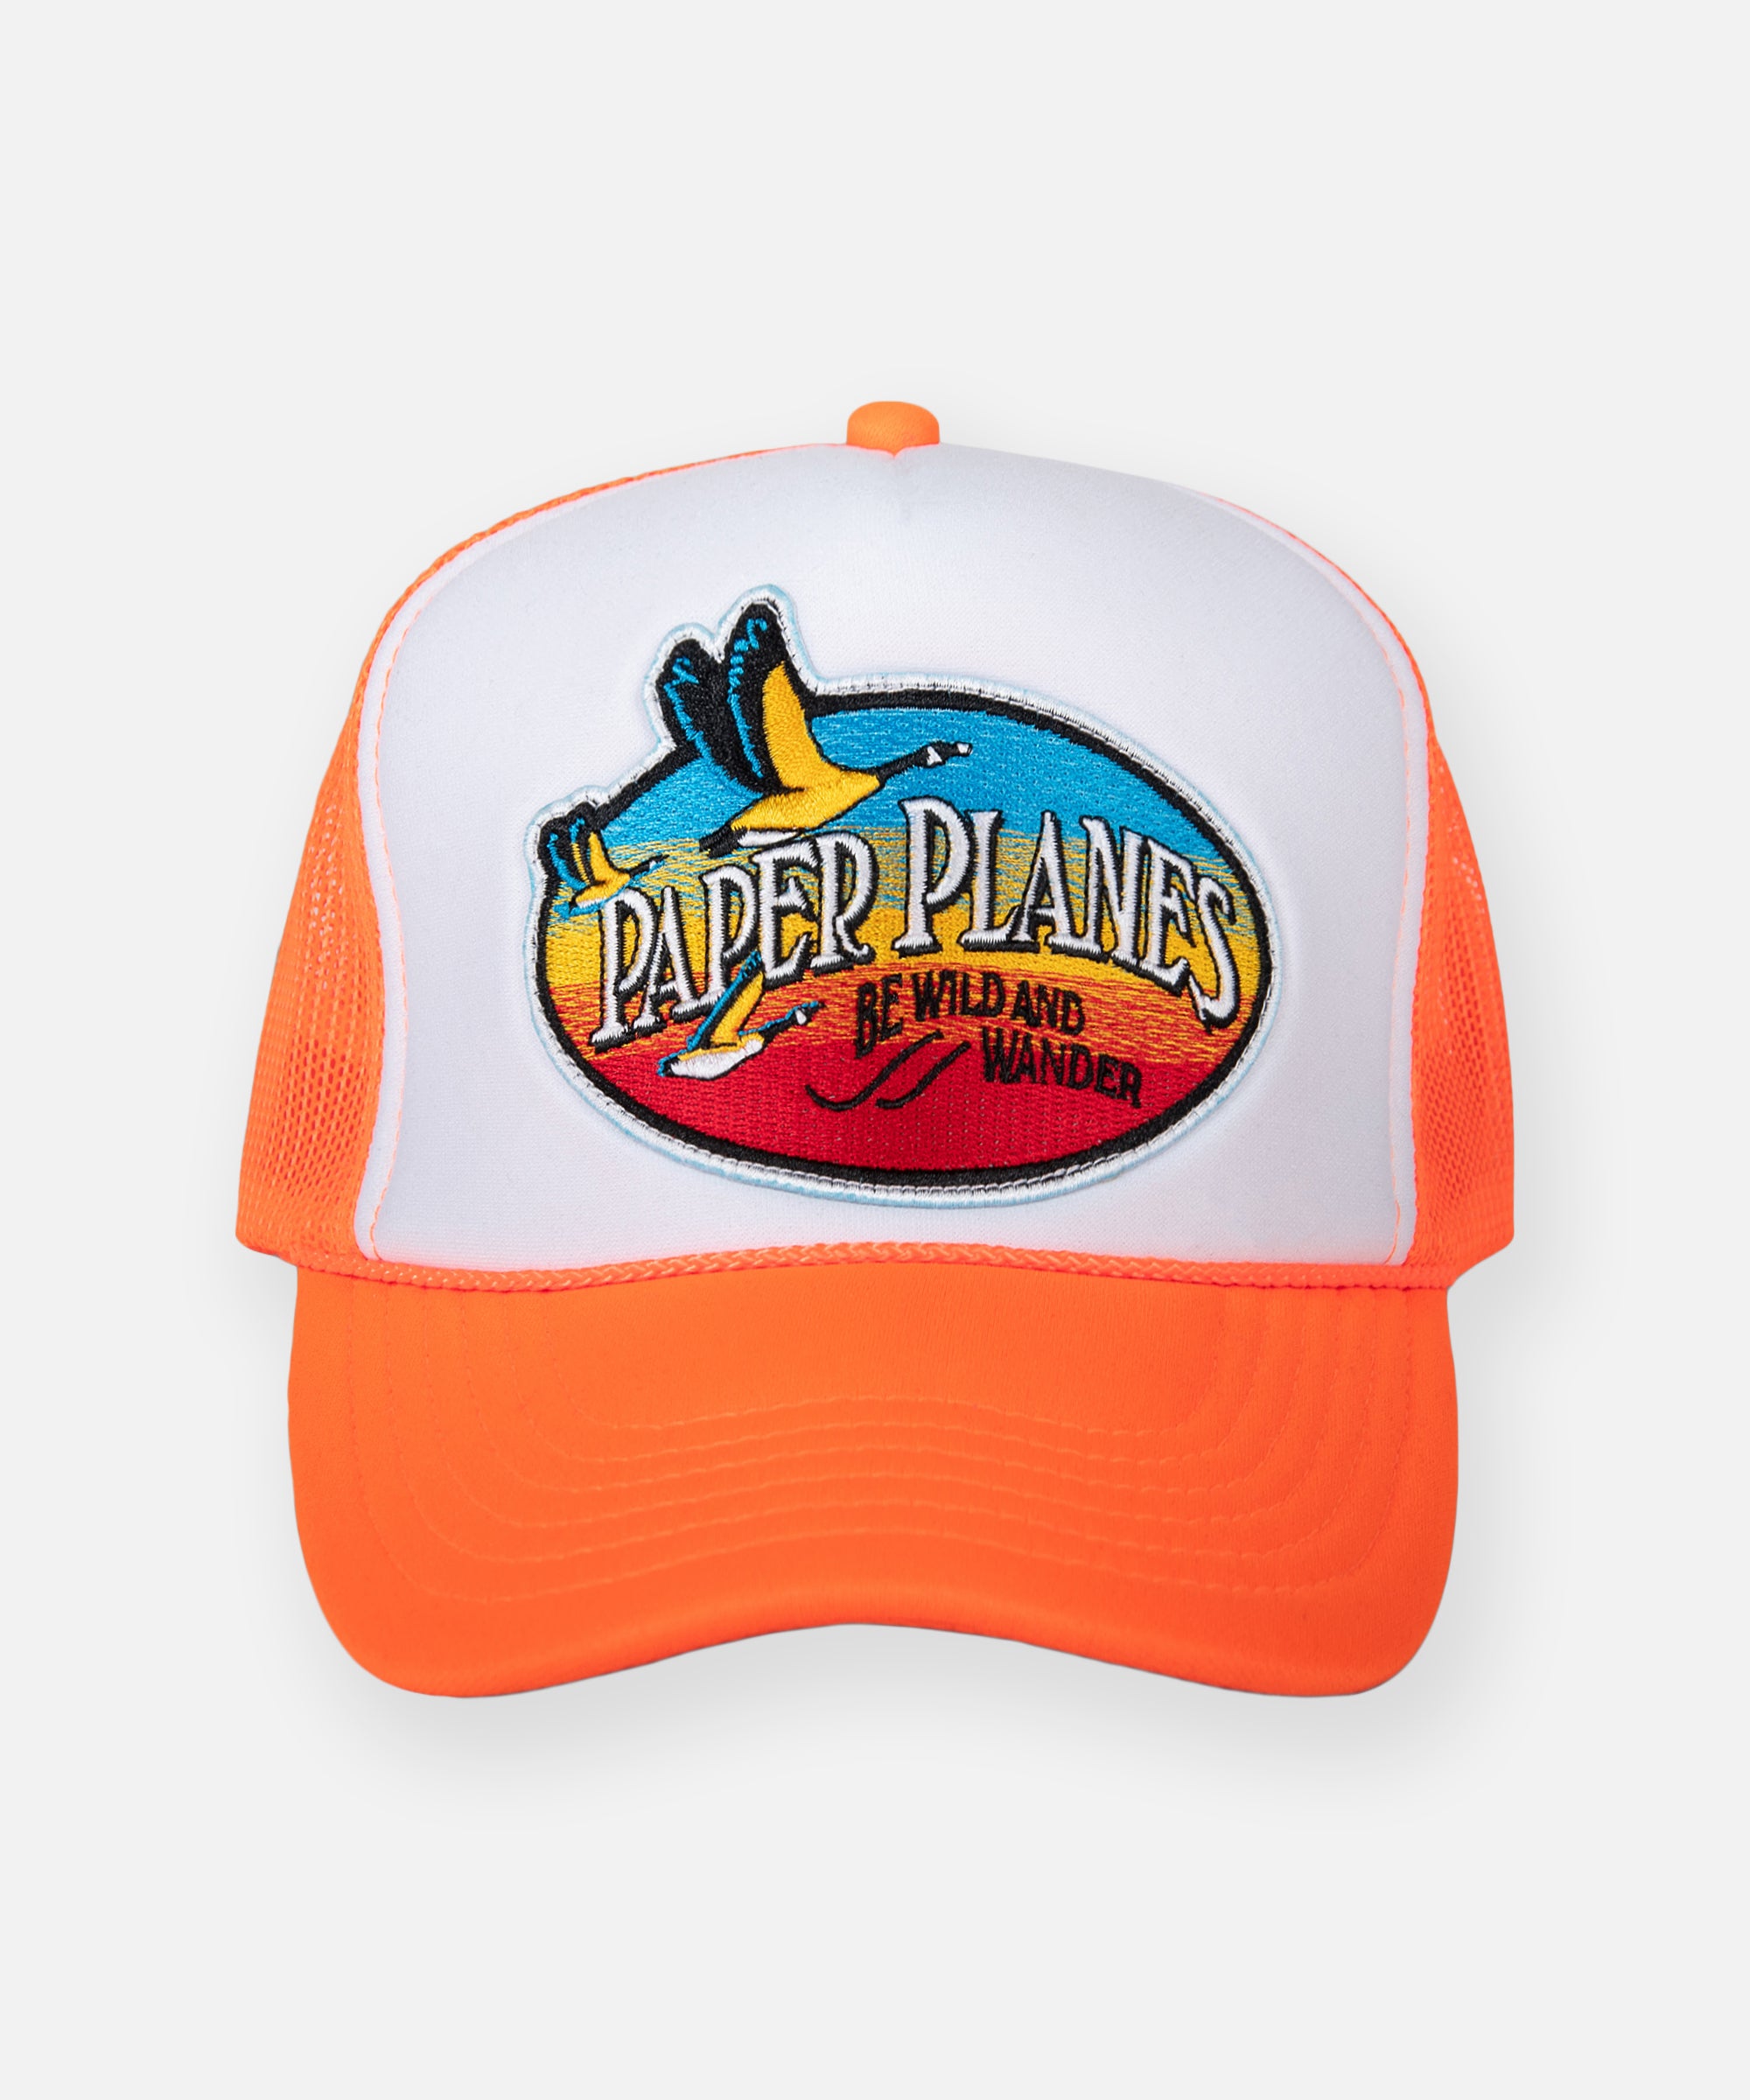 Truck Driver Caps, Roc Nation Hat, Baseball Cap, Paper Planes